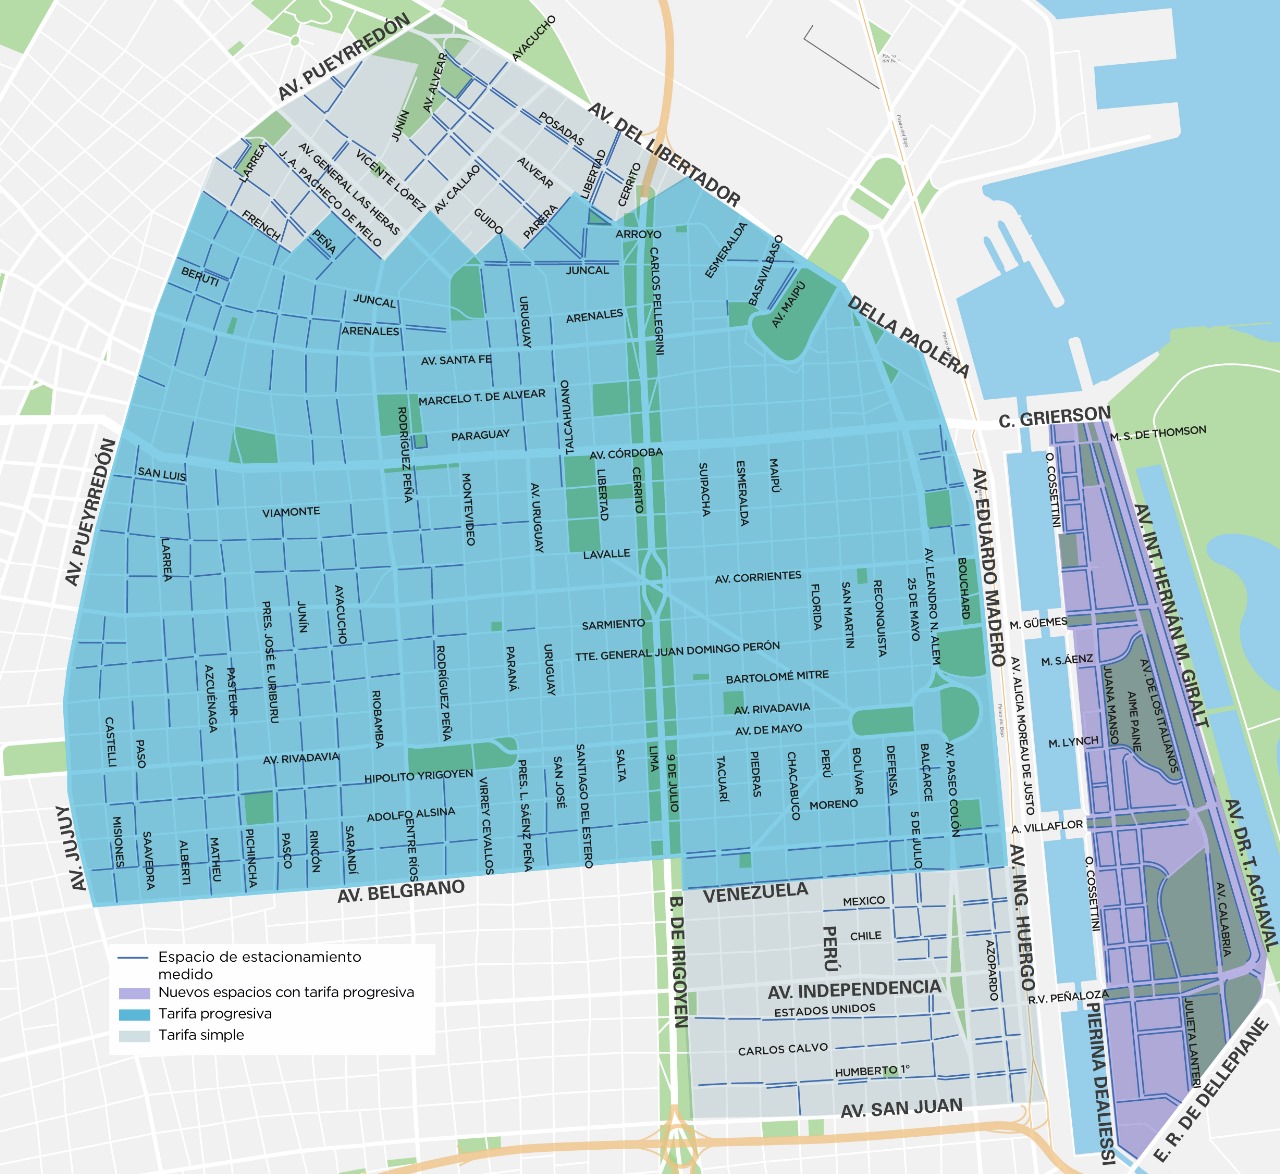 Mapa zona tarifada del estacionamiento medido de Buenos Aires